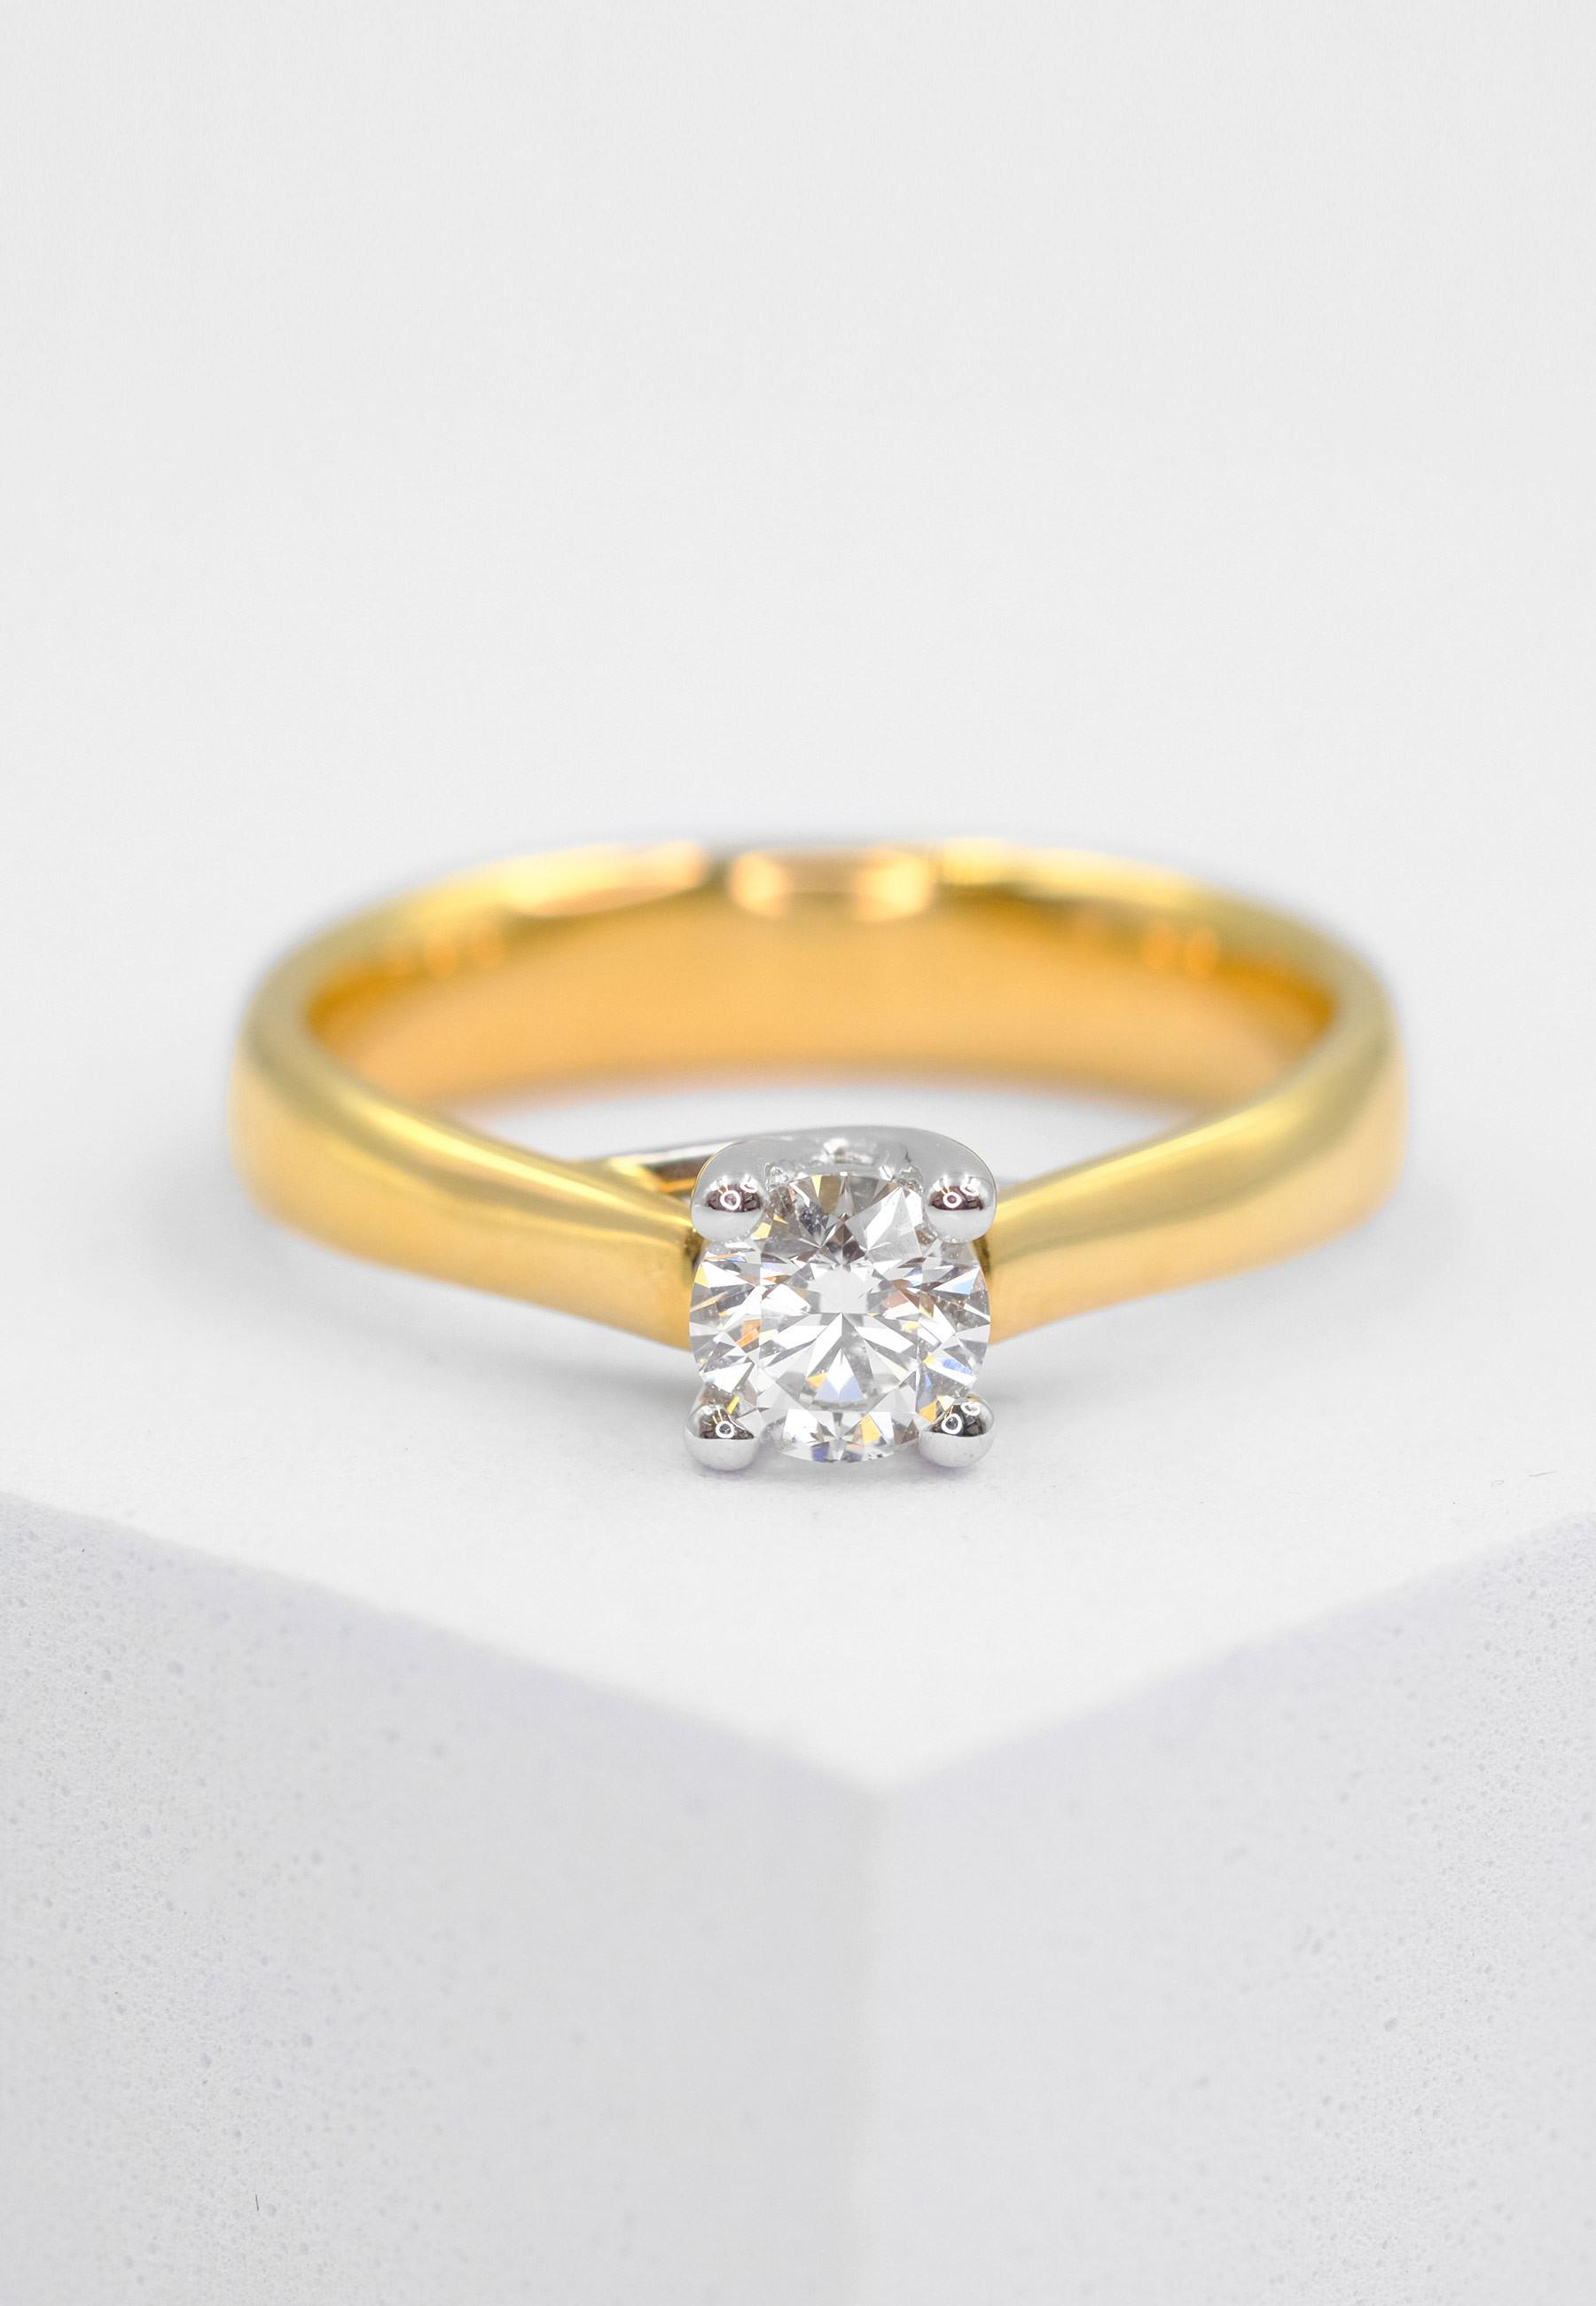 MUAU Schmuck  Solitaire Ring Diamant 0.25 ct Gold 750 